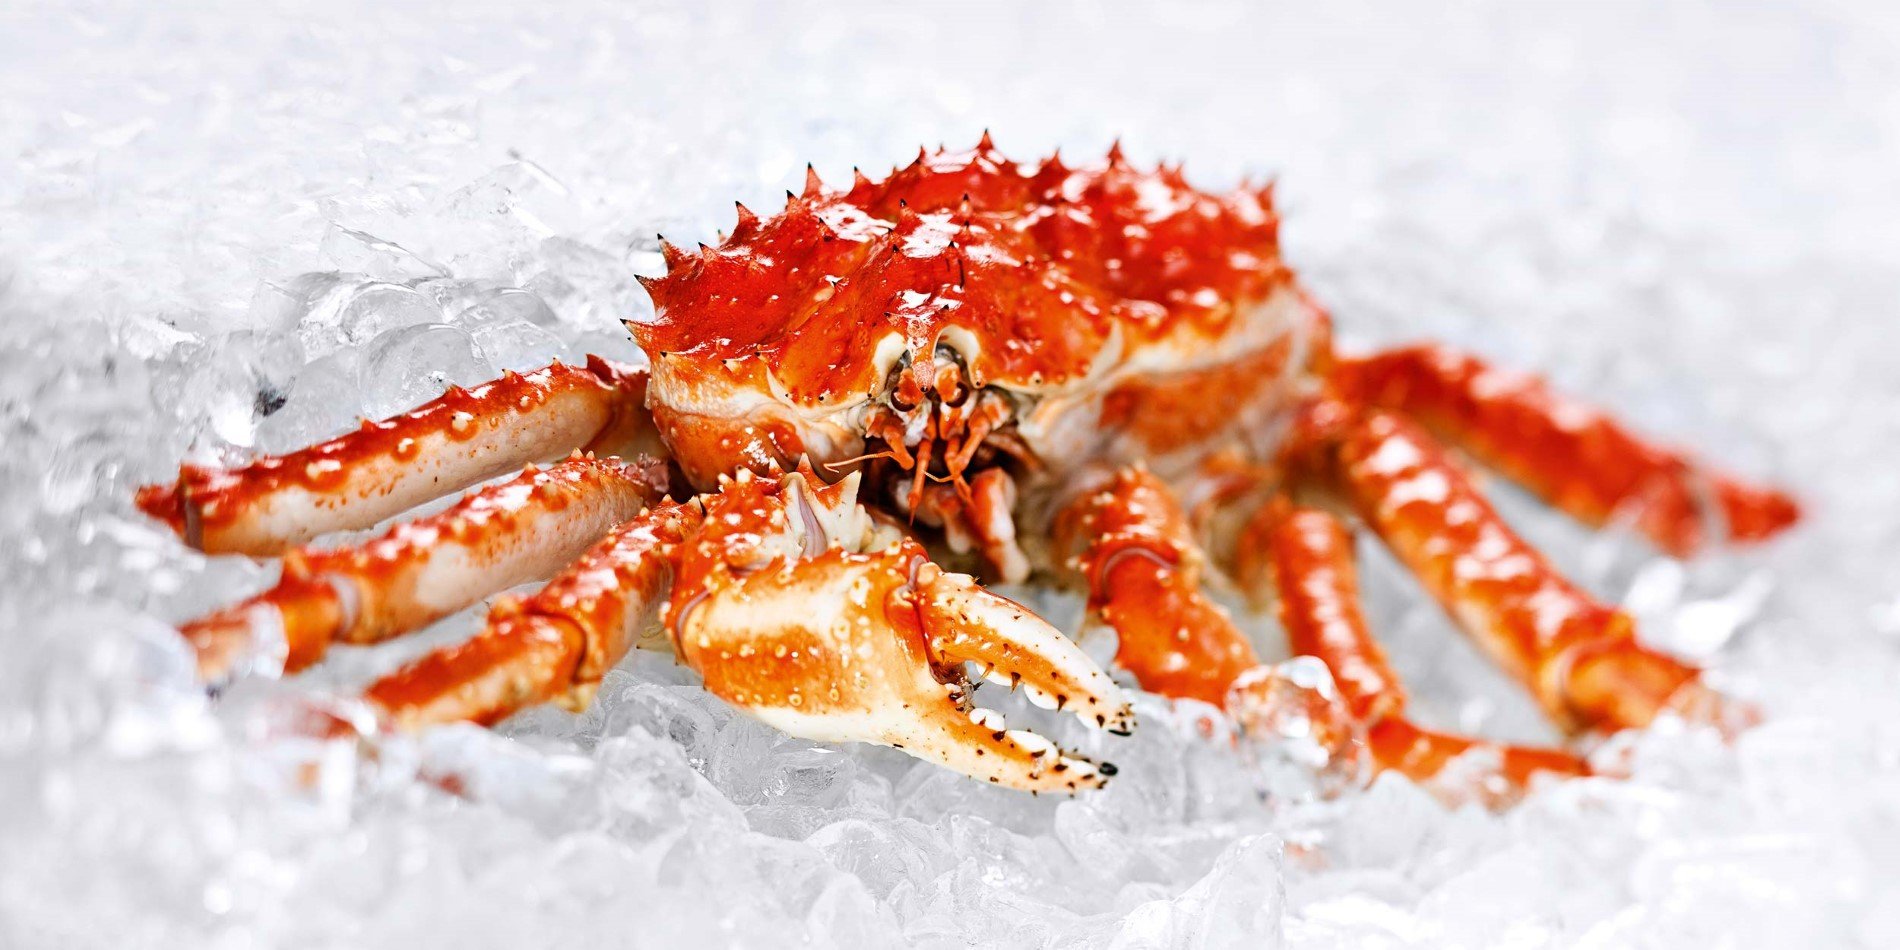 Crab on ice